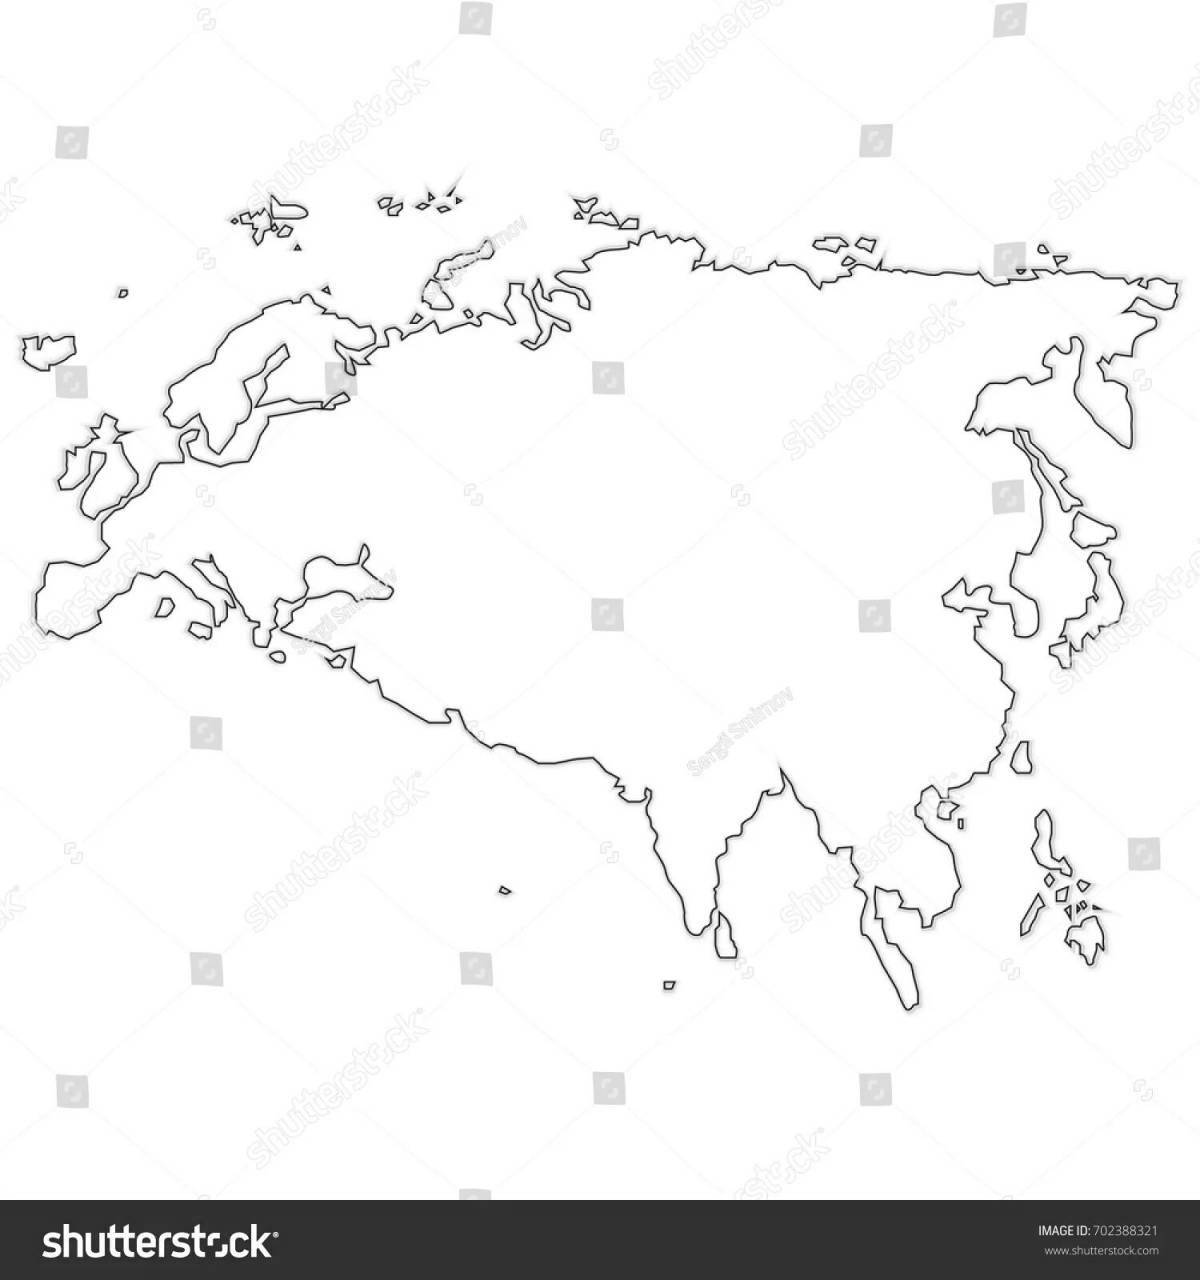 Замысловатая карта евразии раскраска